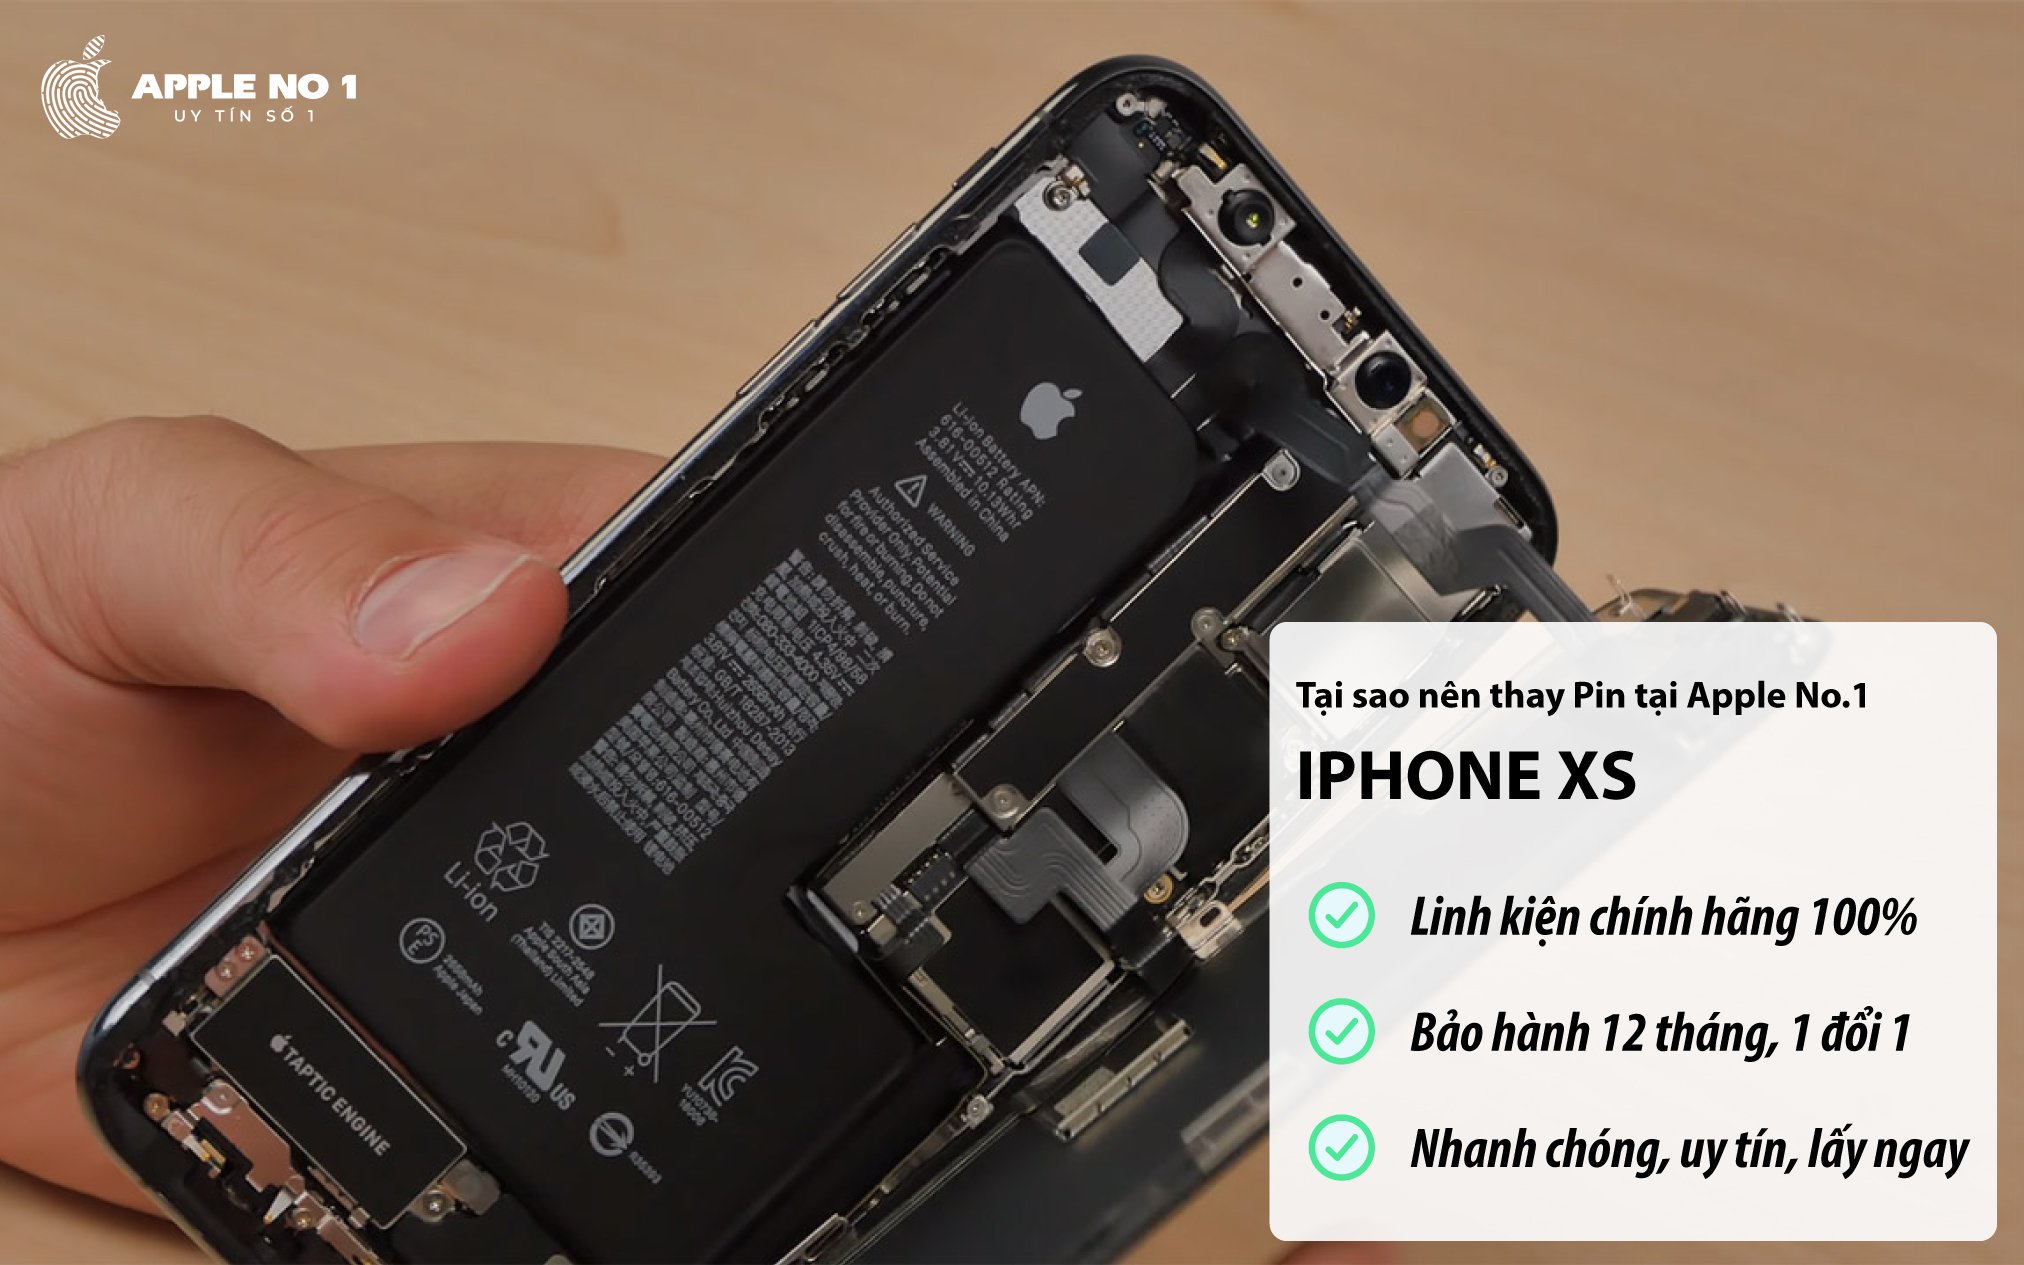 Dịch vụ thay pin iPhone XS chính hãng, giá rẻ tại Apple No.1